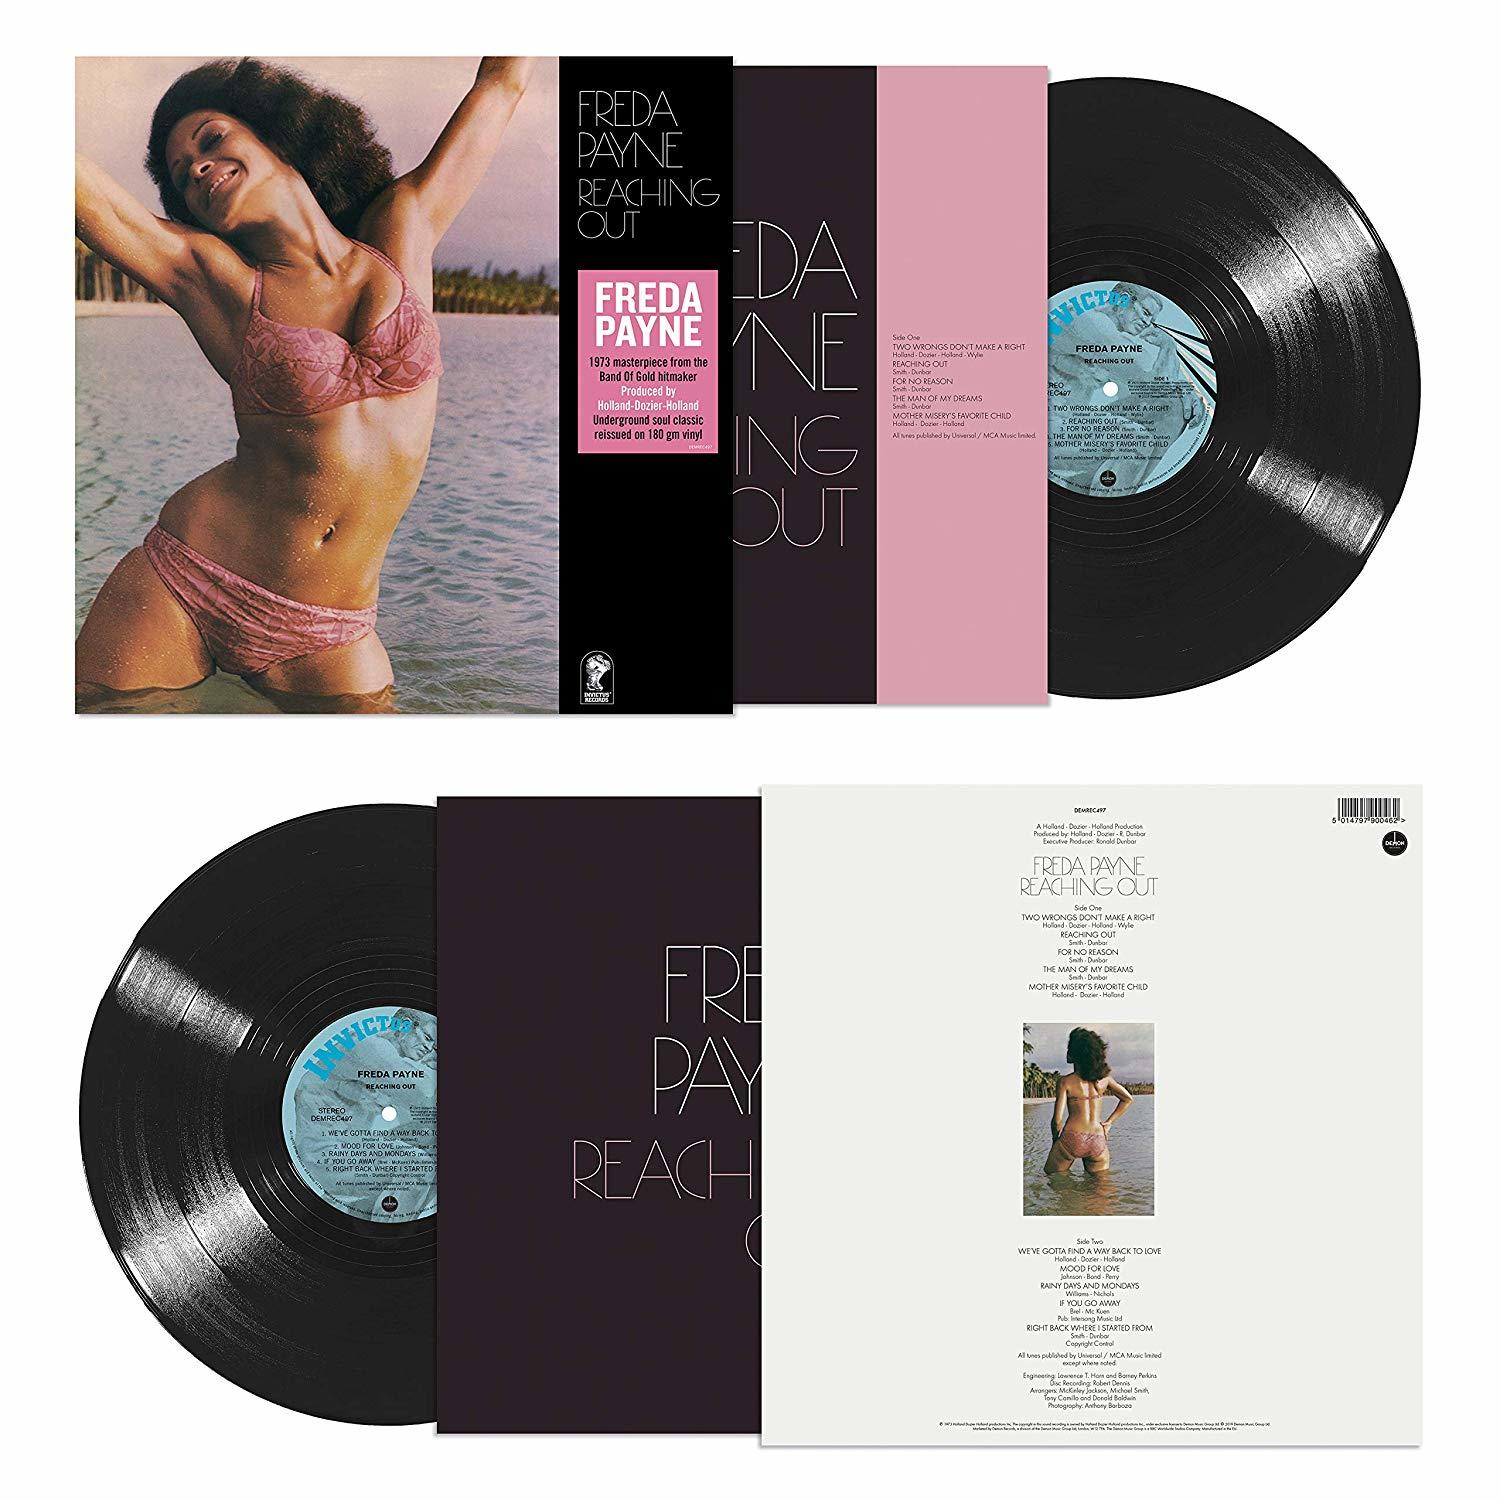 Freda Payne out (Vinyl) - - Reaching